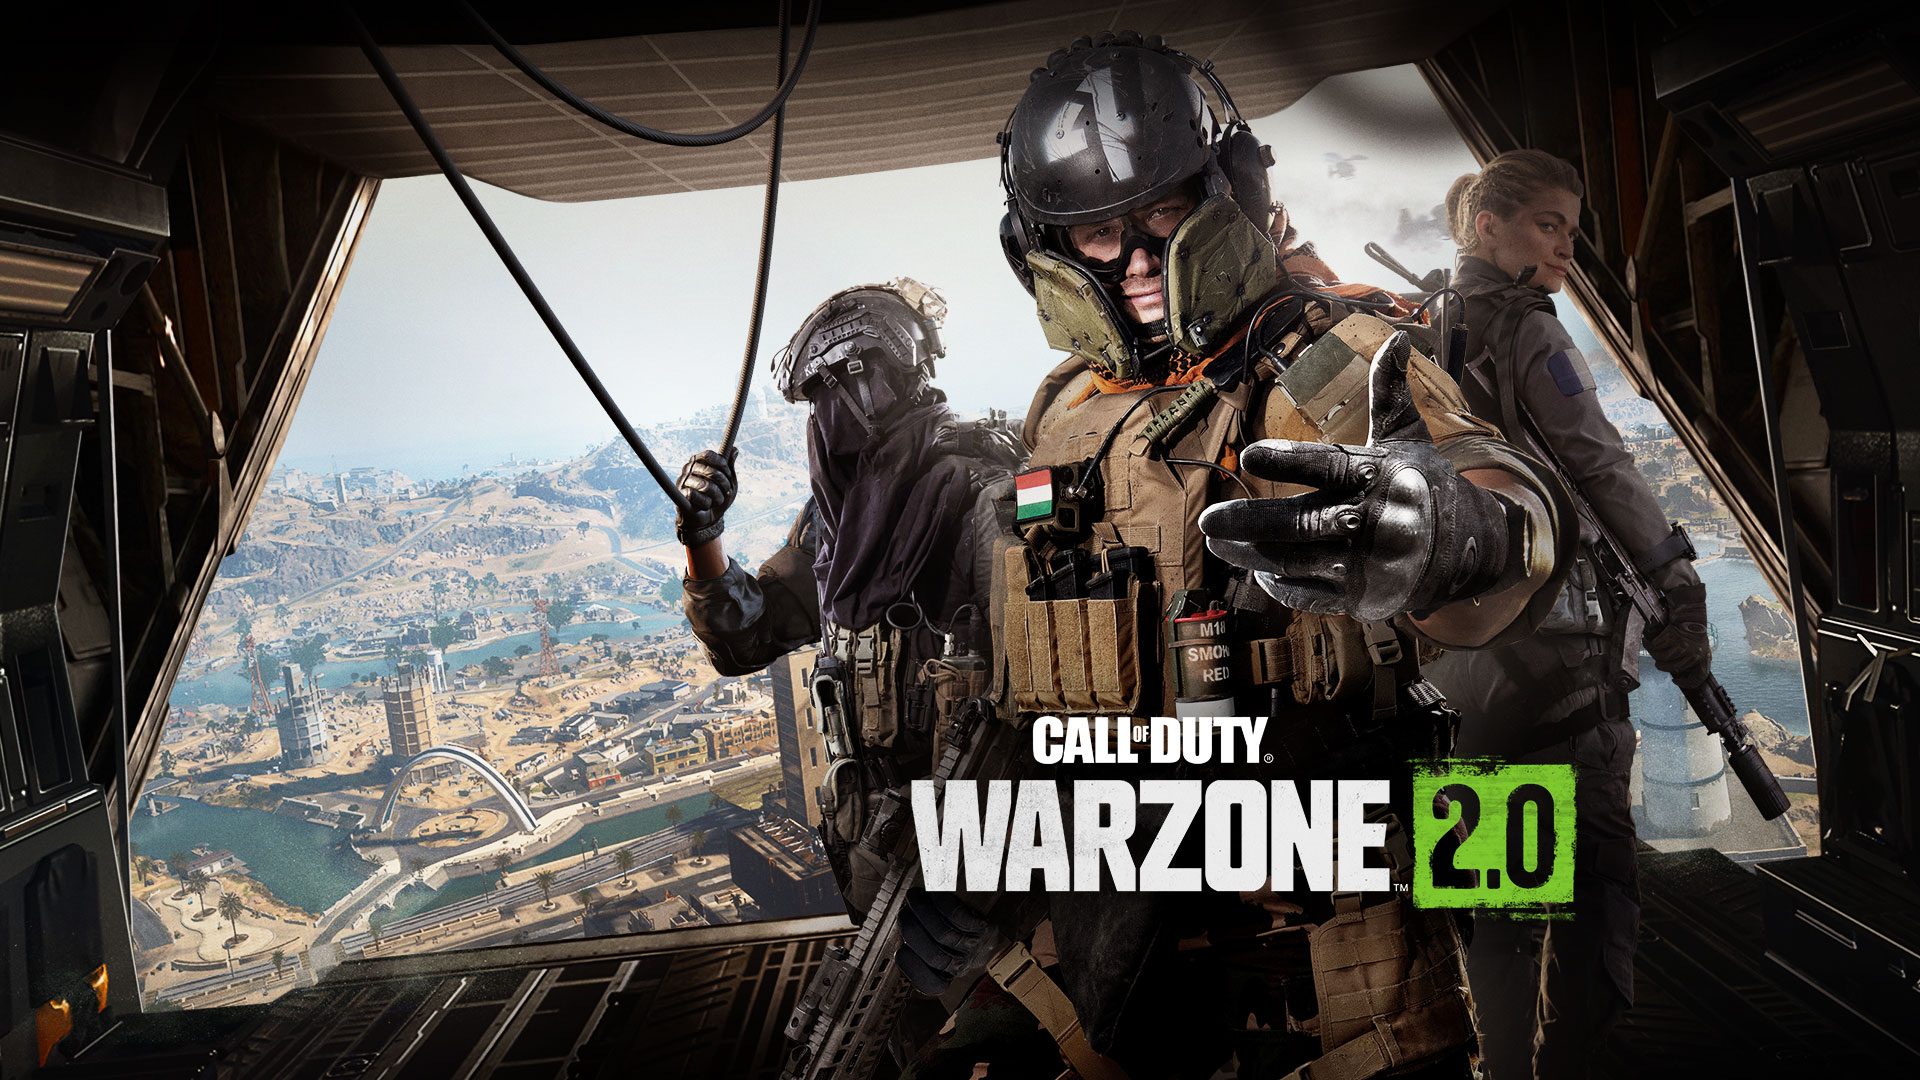 Call of Duty Warzone 2.0, стоя в задней части транспортного самолета, трое оперативников протягивают руки, приглашая вас присоединиться к действию.